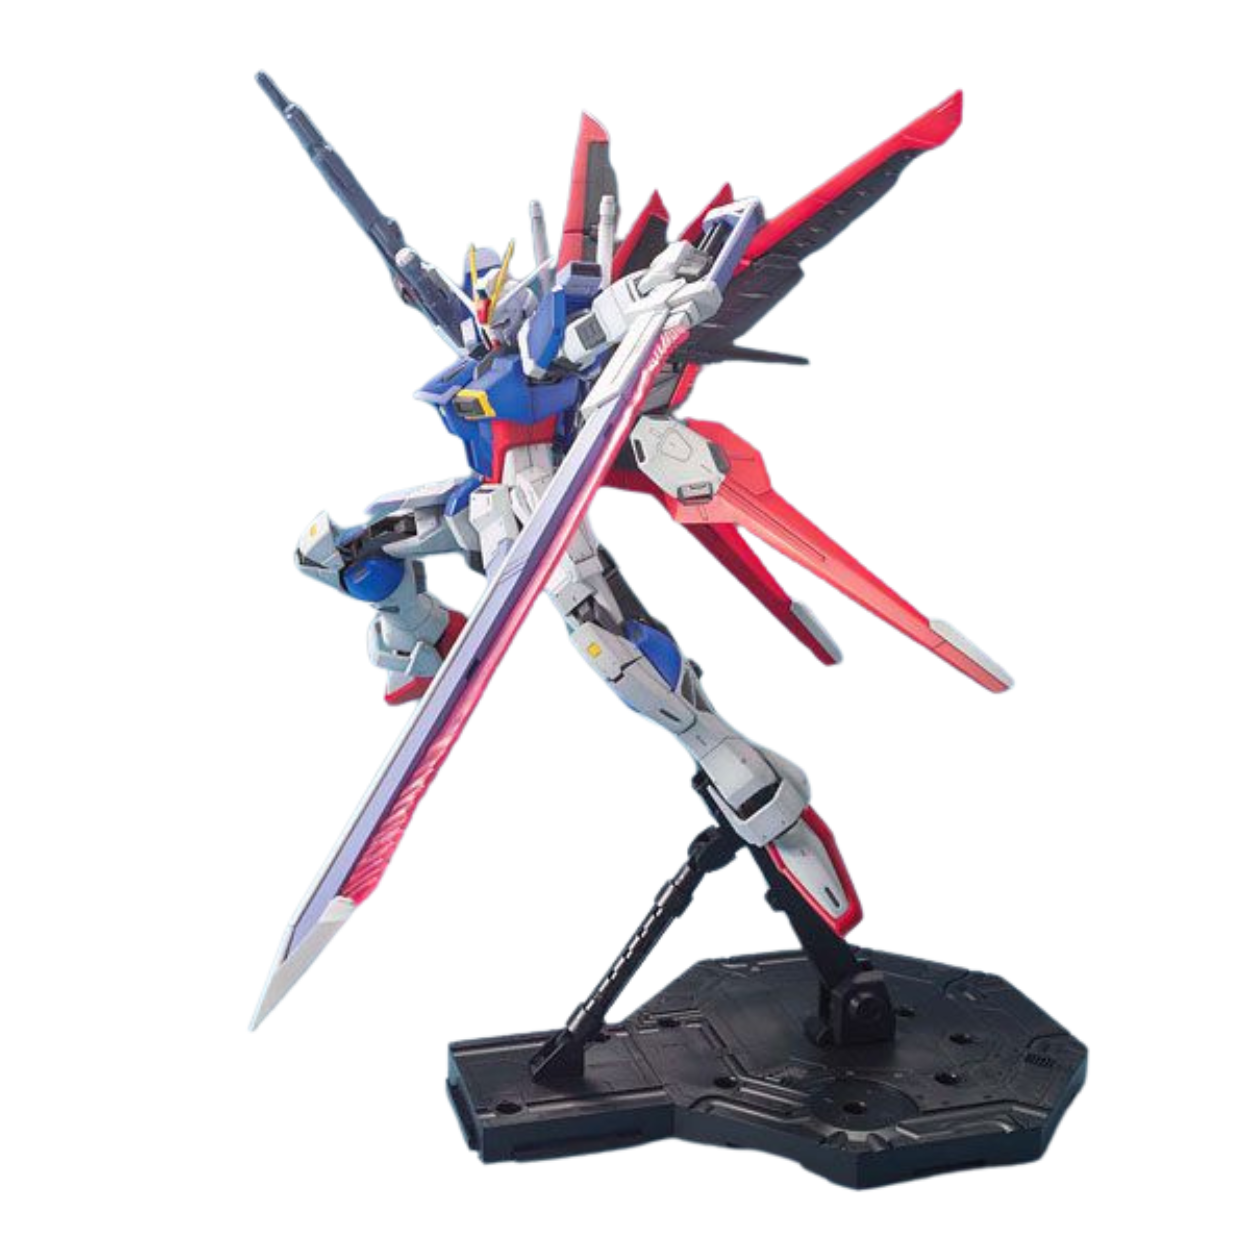 MG ZGMF-X56S Force Impulse Gundam Product Photo